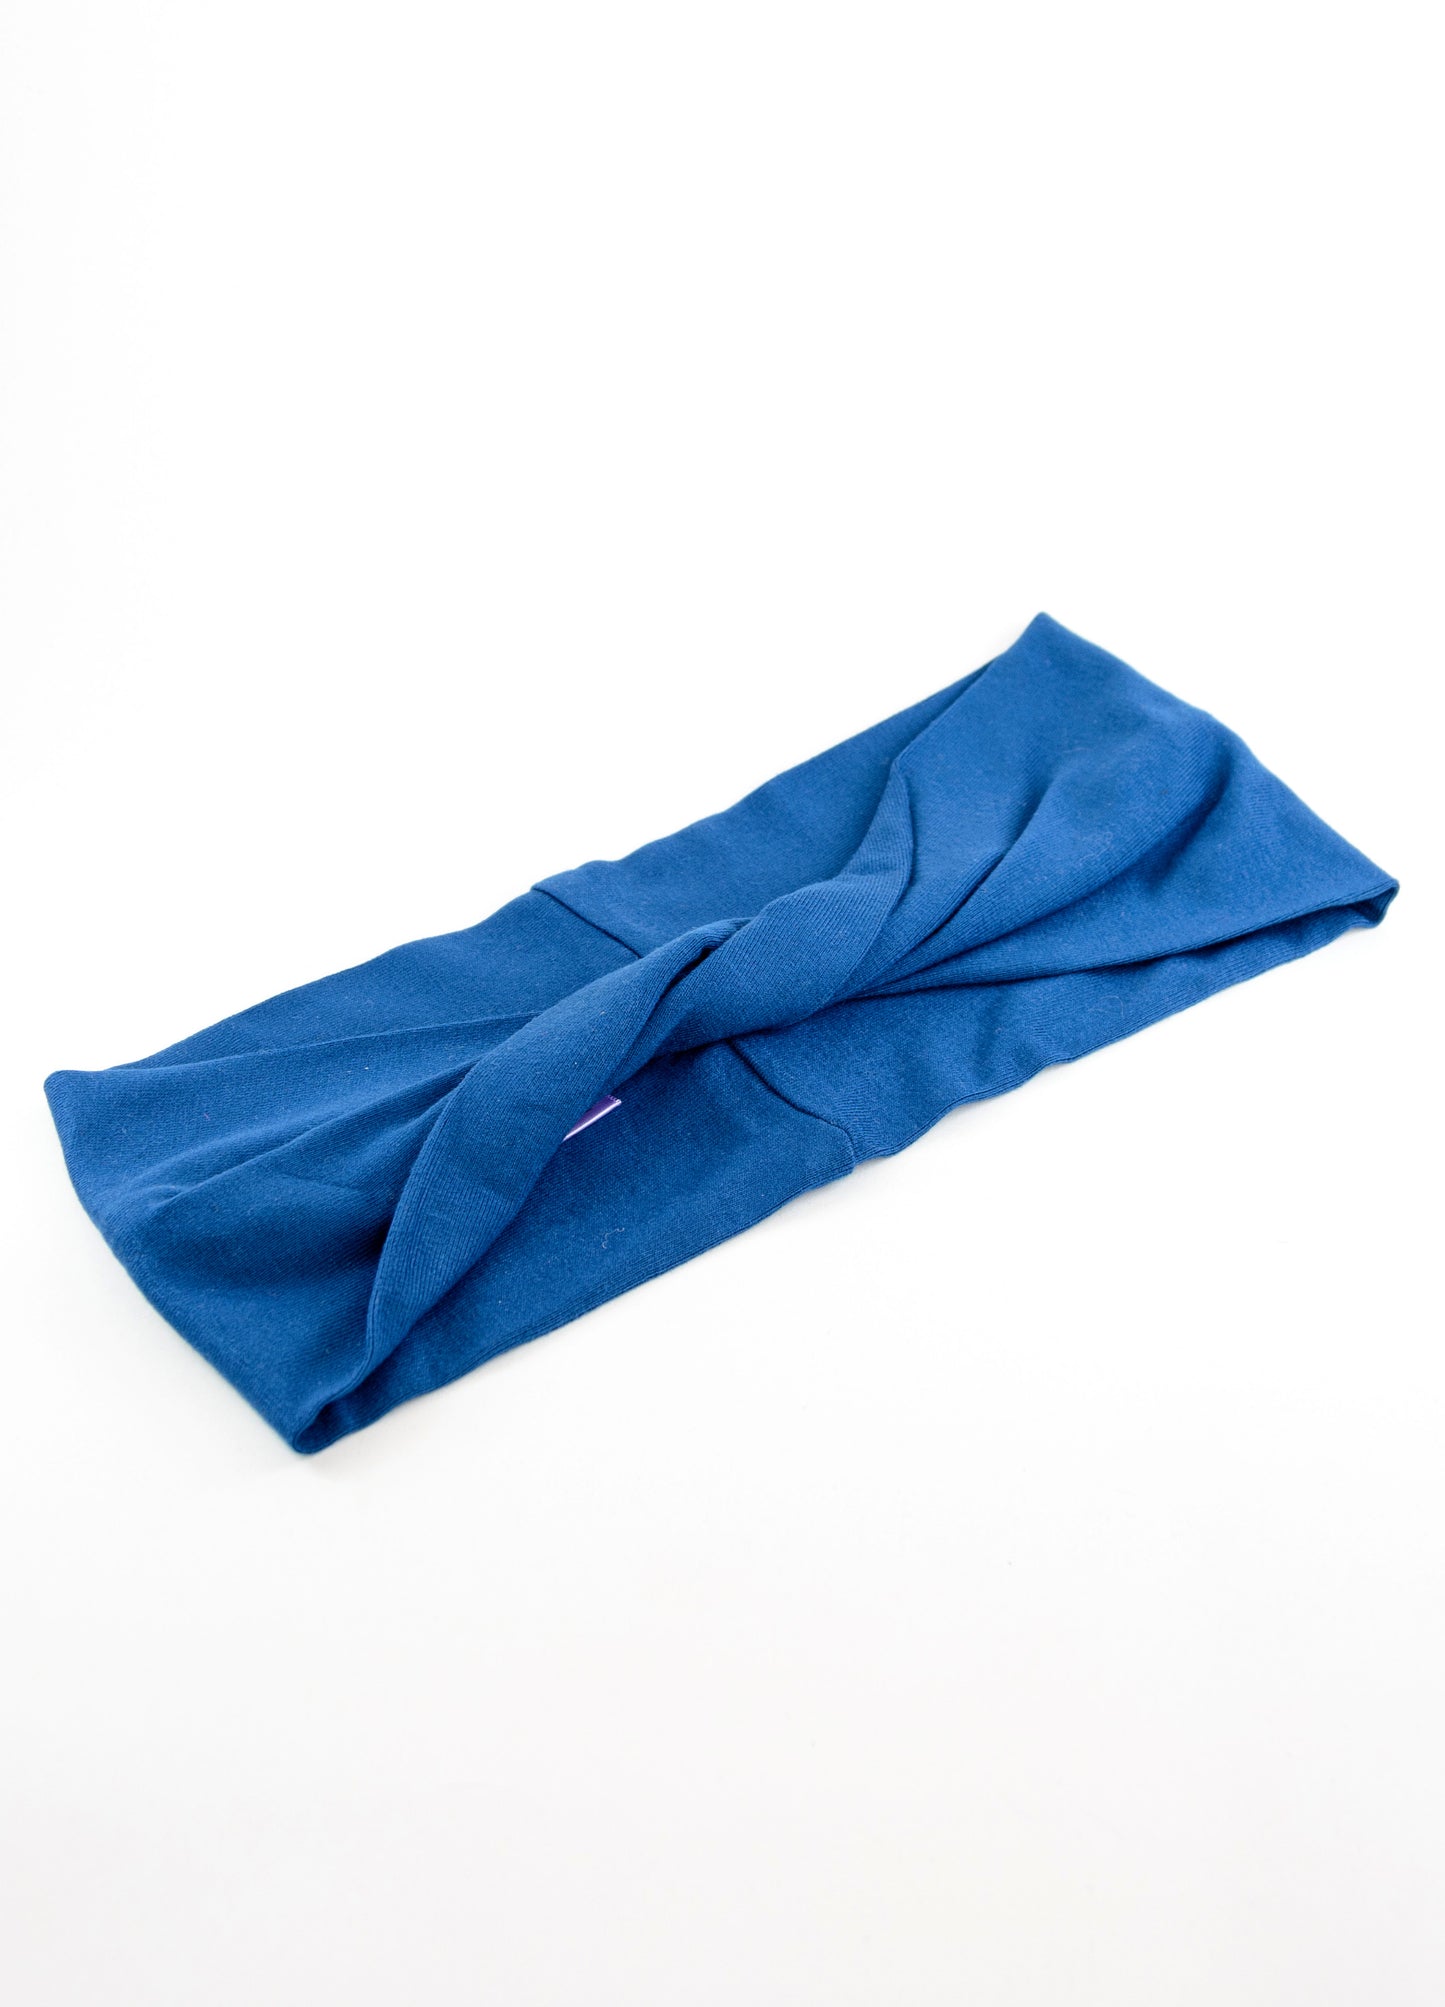 Mika twist headband in pacific blue